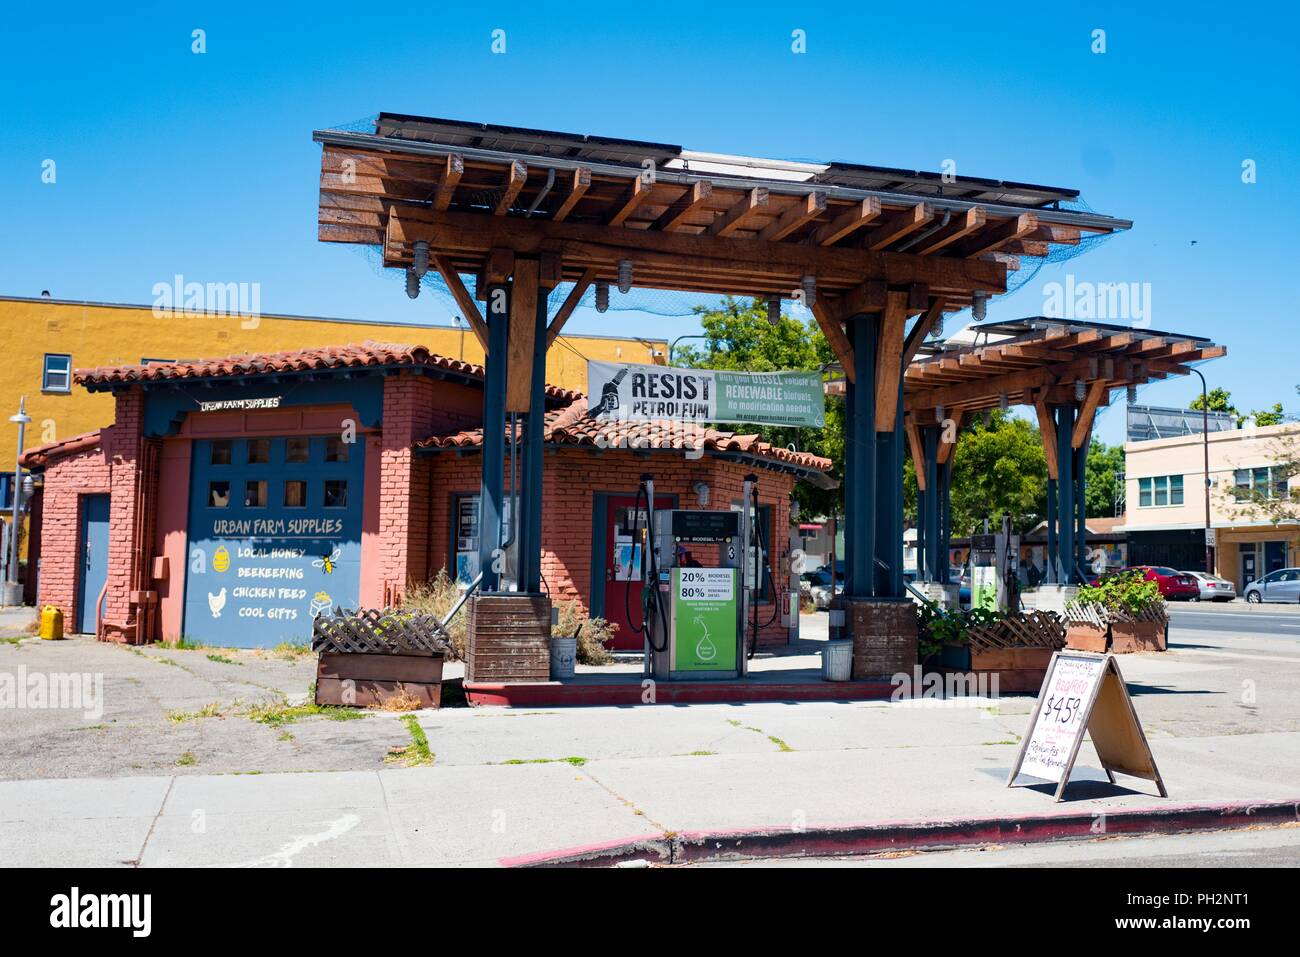 Fachada de BiofuelOasis, una cooperativa propiedad gasolinera y almacén de suministros en el centro de Berkeley, California, con bomba de gas proporcionando combustible biodiesel obtenidos localmente y cartel de resistir el petróleo, 12 de junio de 2018. () Foto de stock